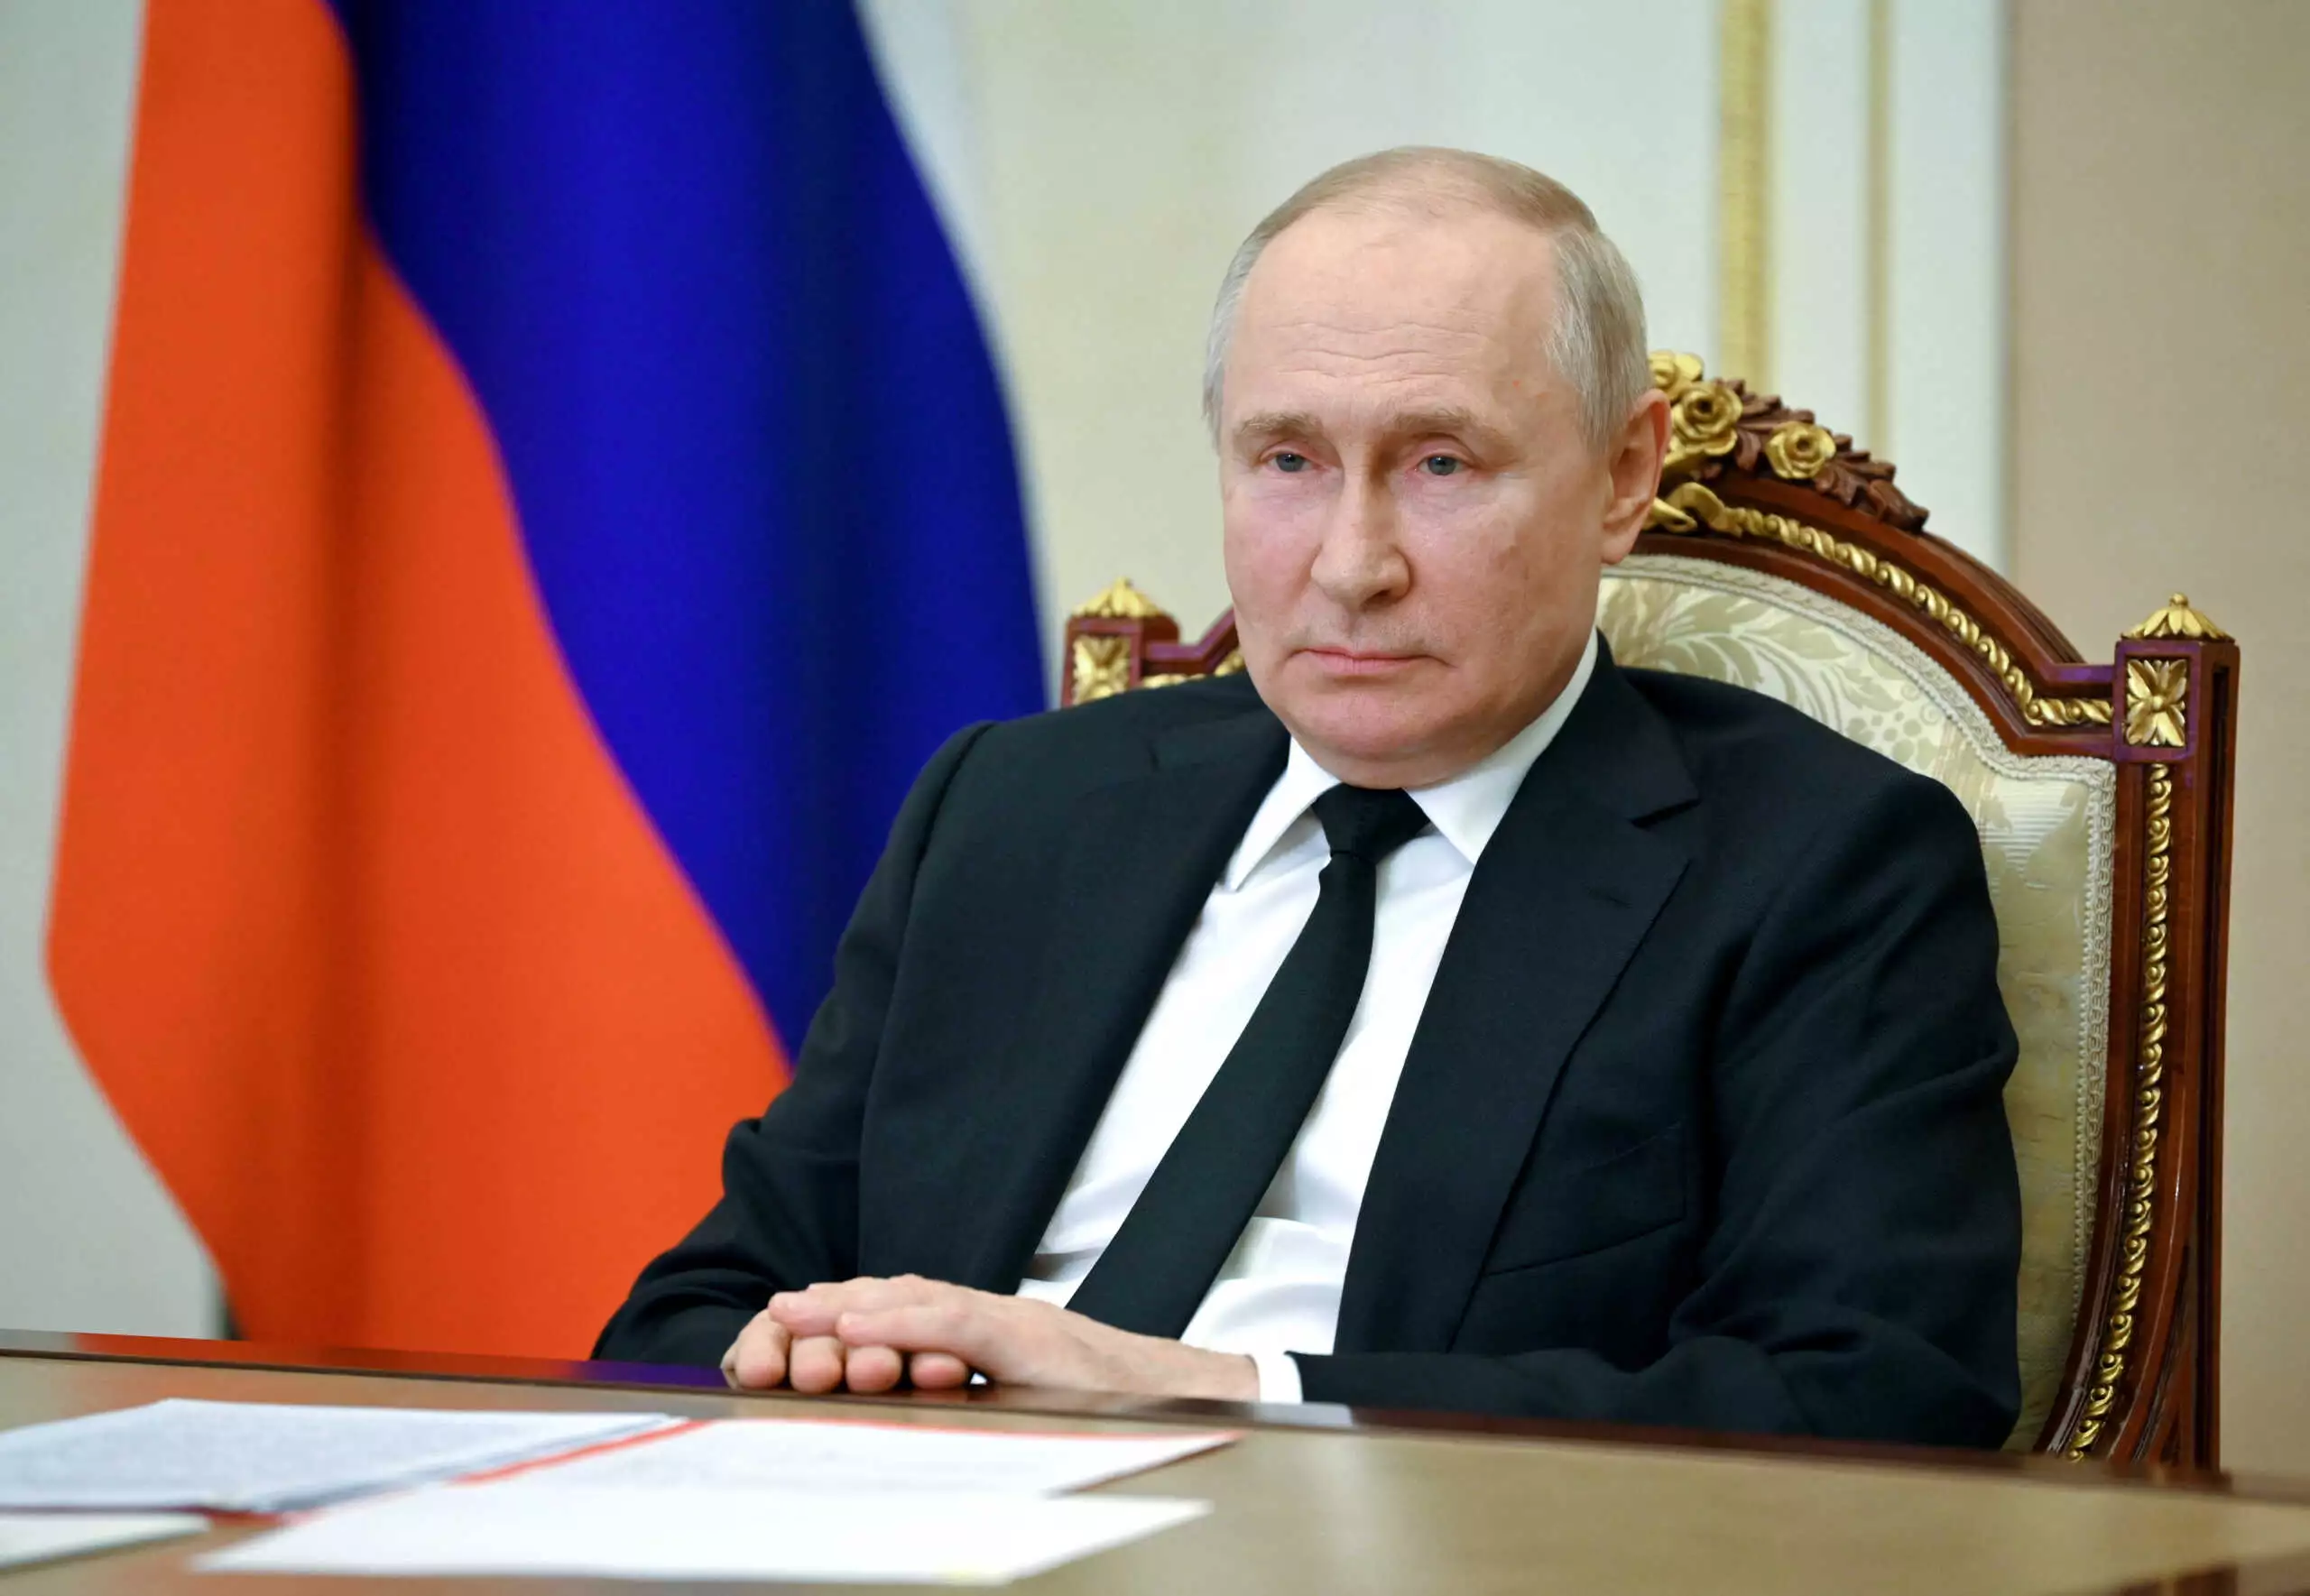 Β.Πούτιν: Δεν θα συμμετέχει στη σύνοδο των G20 – Από τον Σ.Λαβρόφ θα εκπροσωπηθεί η Ρωσία